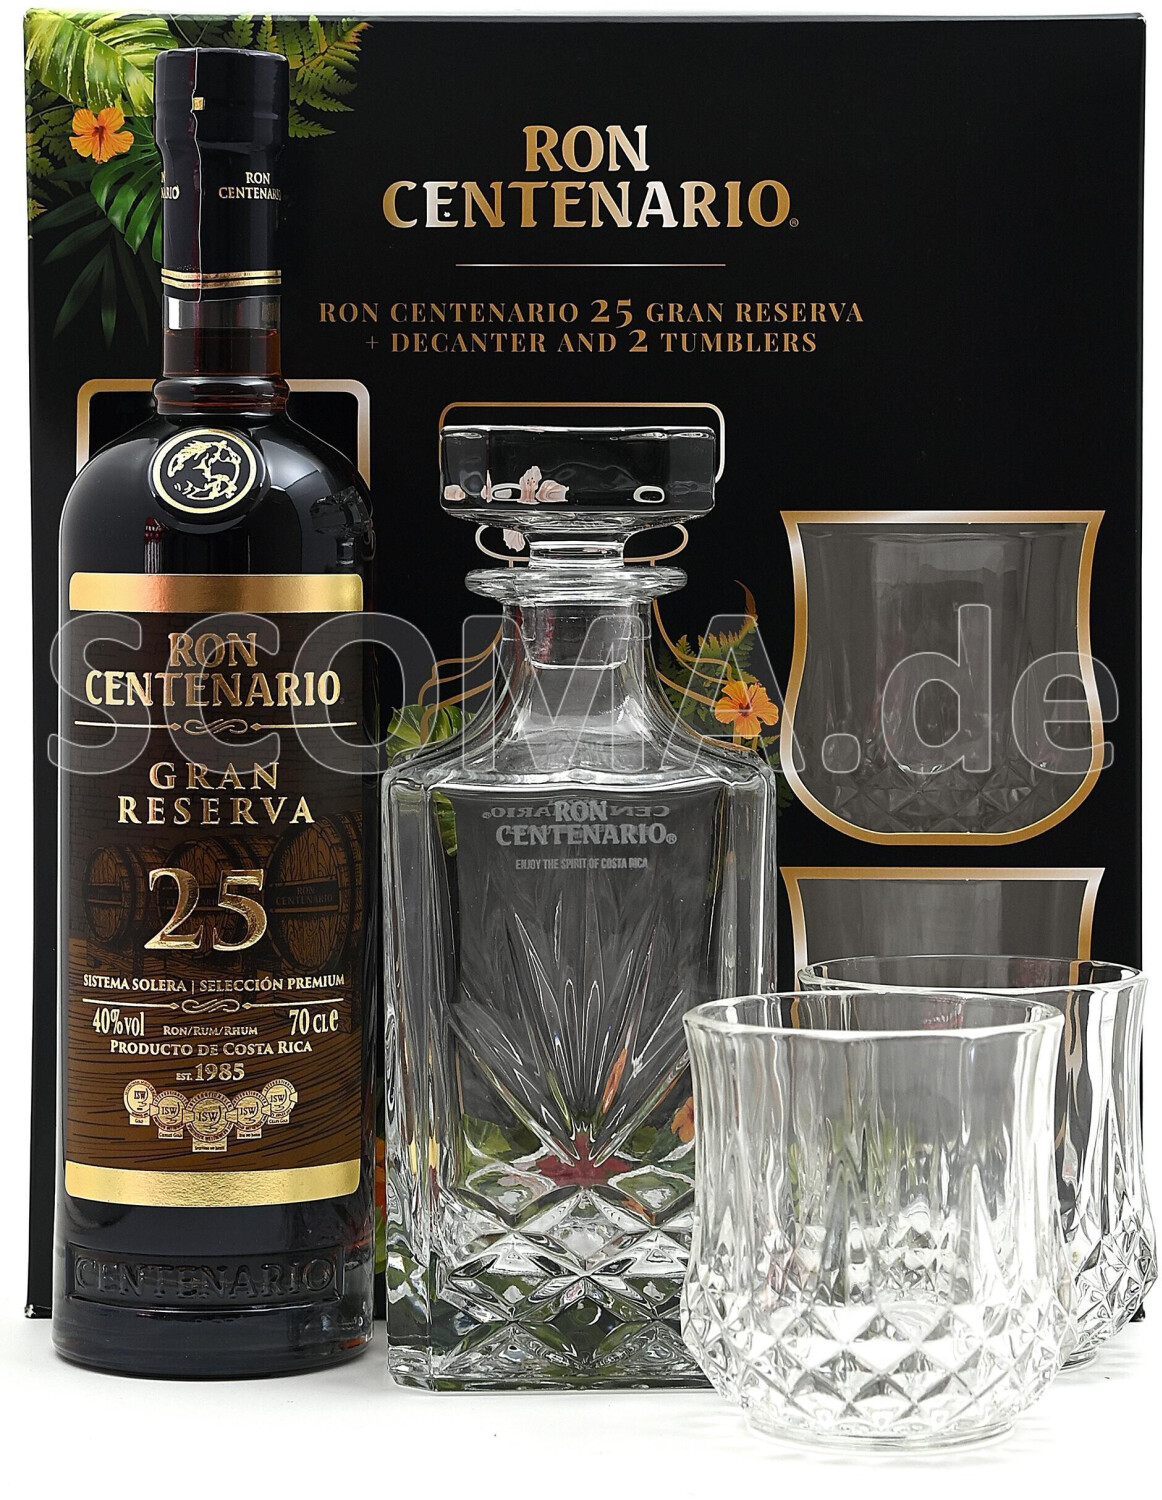 Ron Centenario Gran Gläsern Set 66,47 € mit 25 ab 40% Jahre Reserva bei 0,7l Preisvergleich 